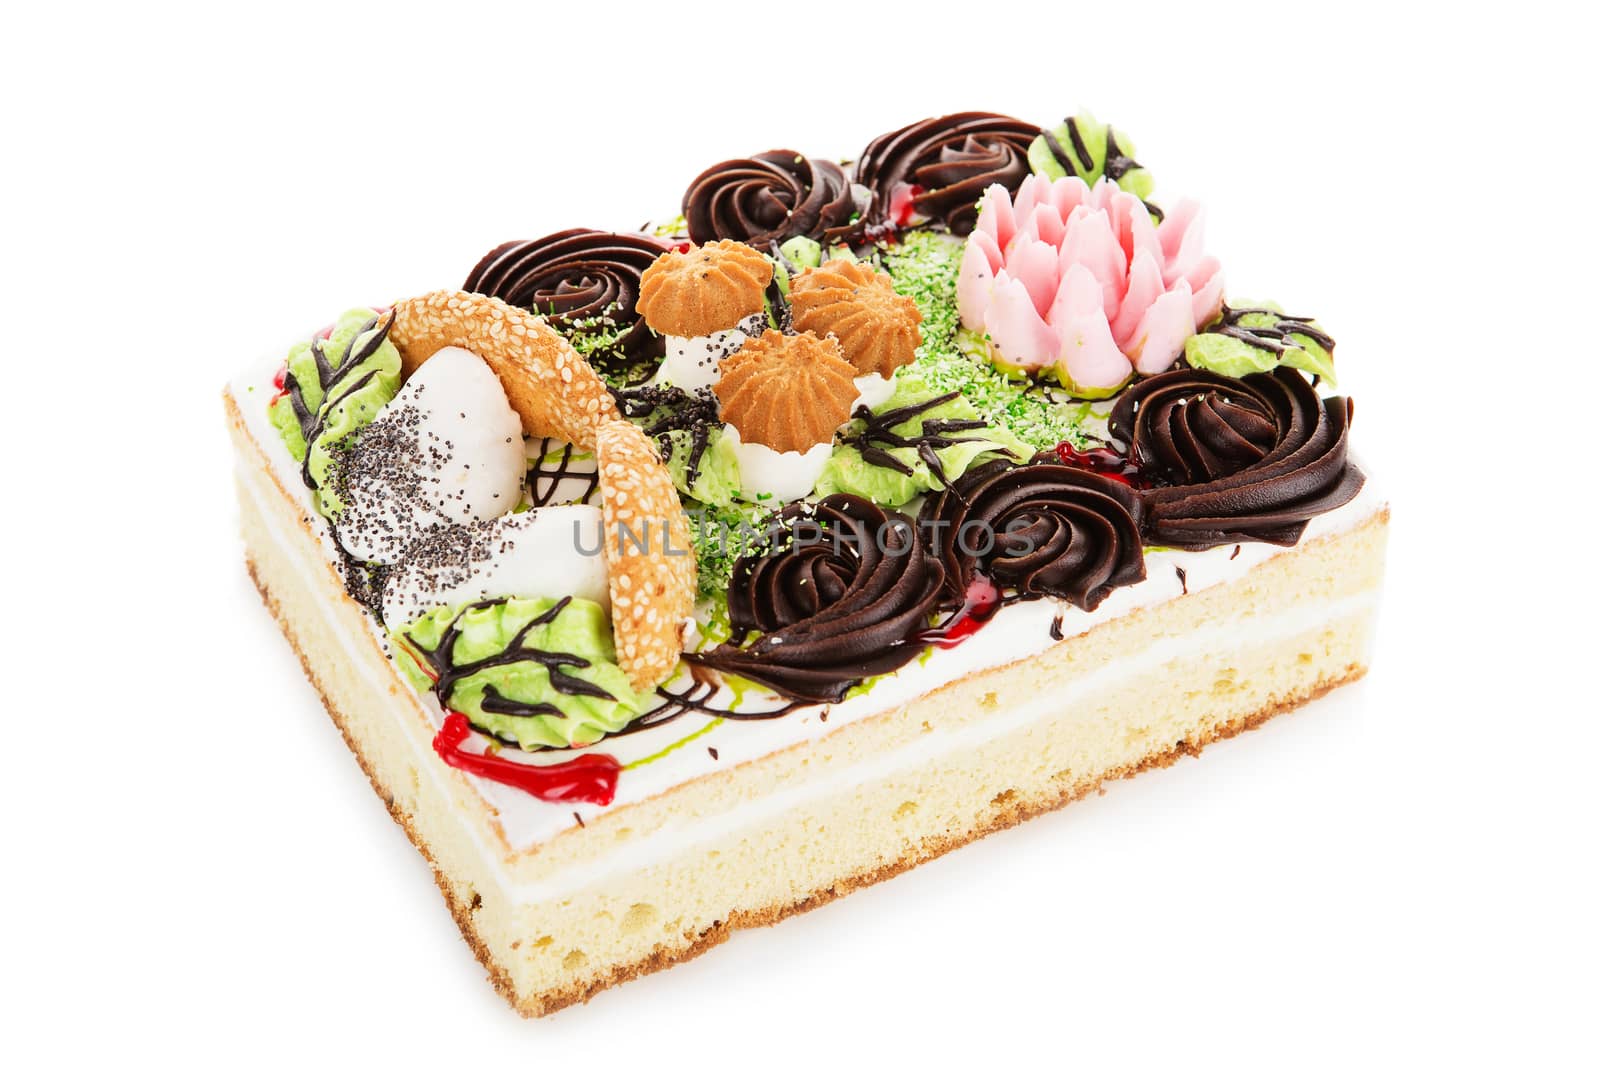 rectangular cake decorated with cream mushrooms isolated on white background